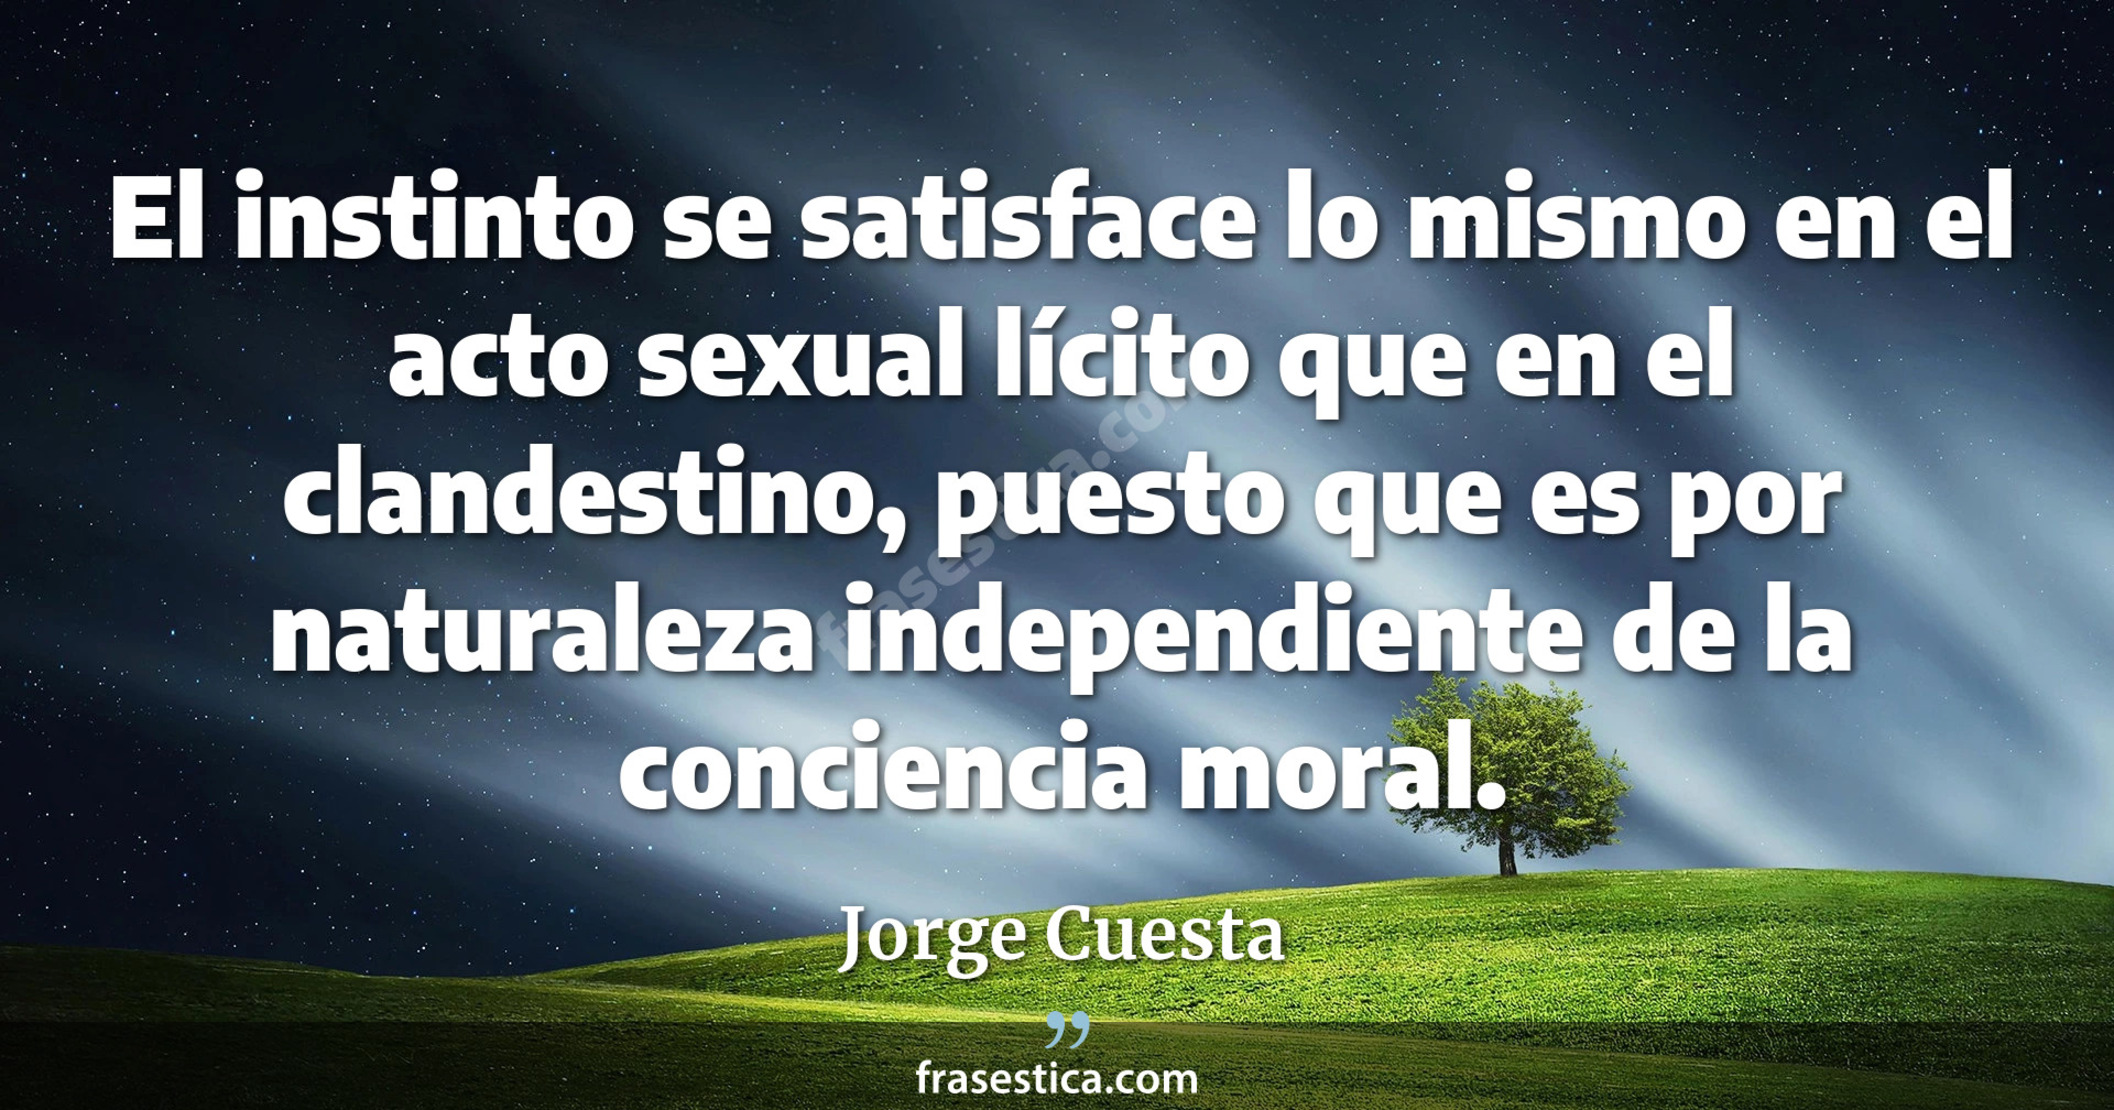 El instinto se satisface lo mismo en el acto sexual lícito que en el clandestino, puesto que es por naturaleza independiente de la conciencia moral. - Jorge Cuesta